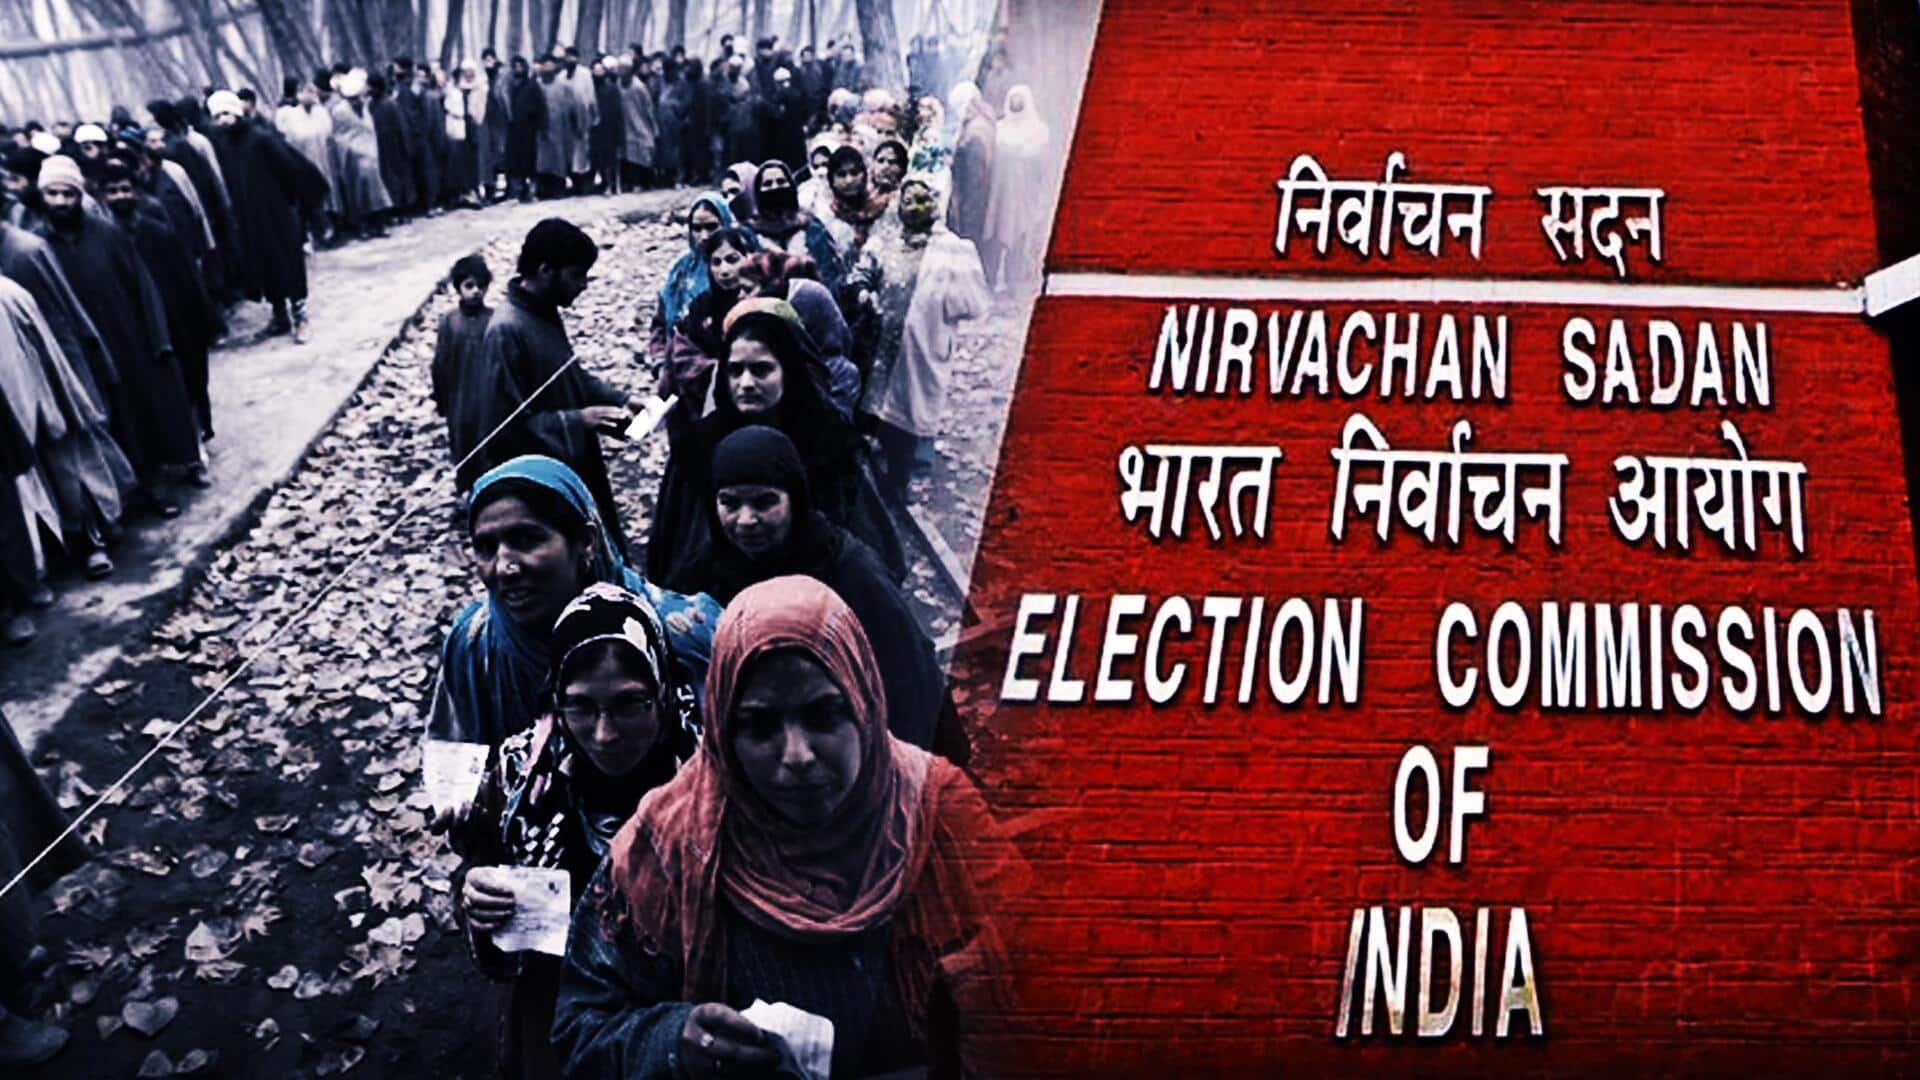 जम्मू-कश्मीर में विधानसभा चुनाव की तैयारियां तेज, 20 अगस्त तक मतदाता सूची तैयार करने के निर्देश